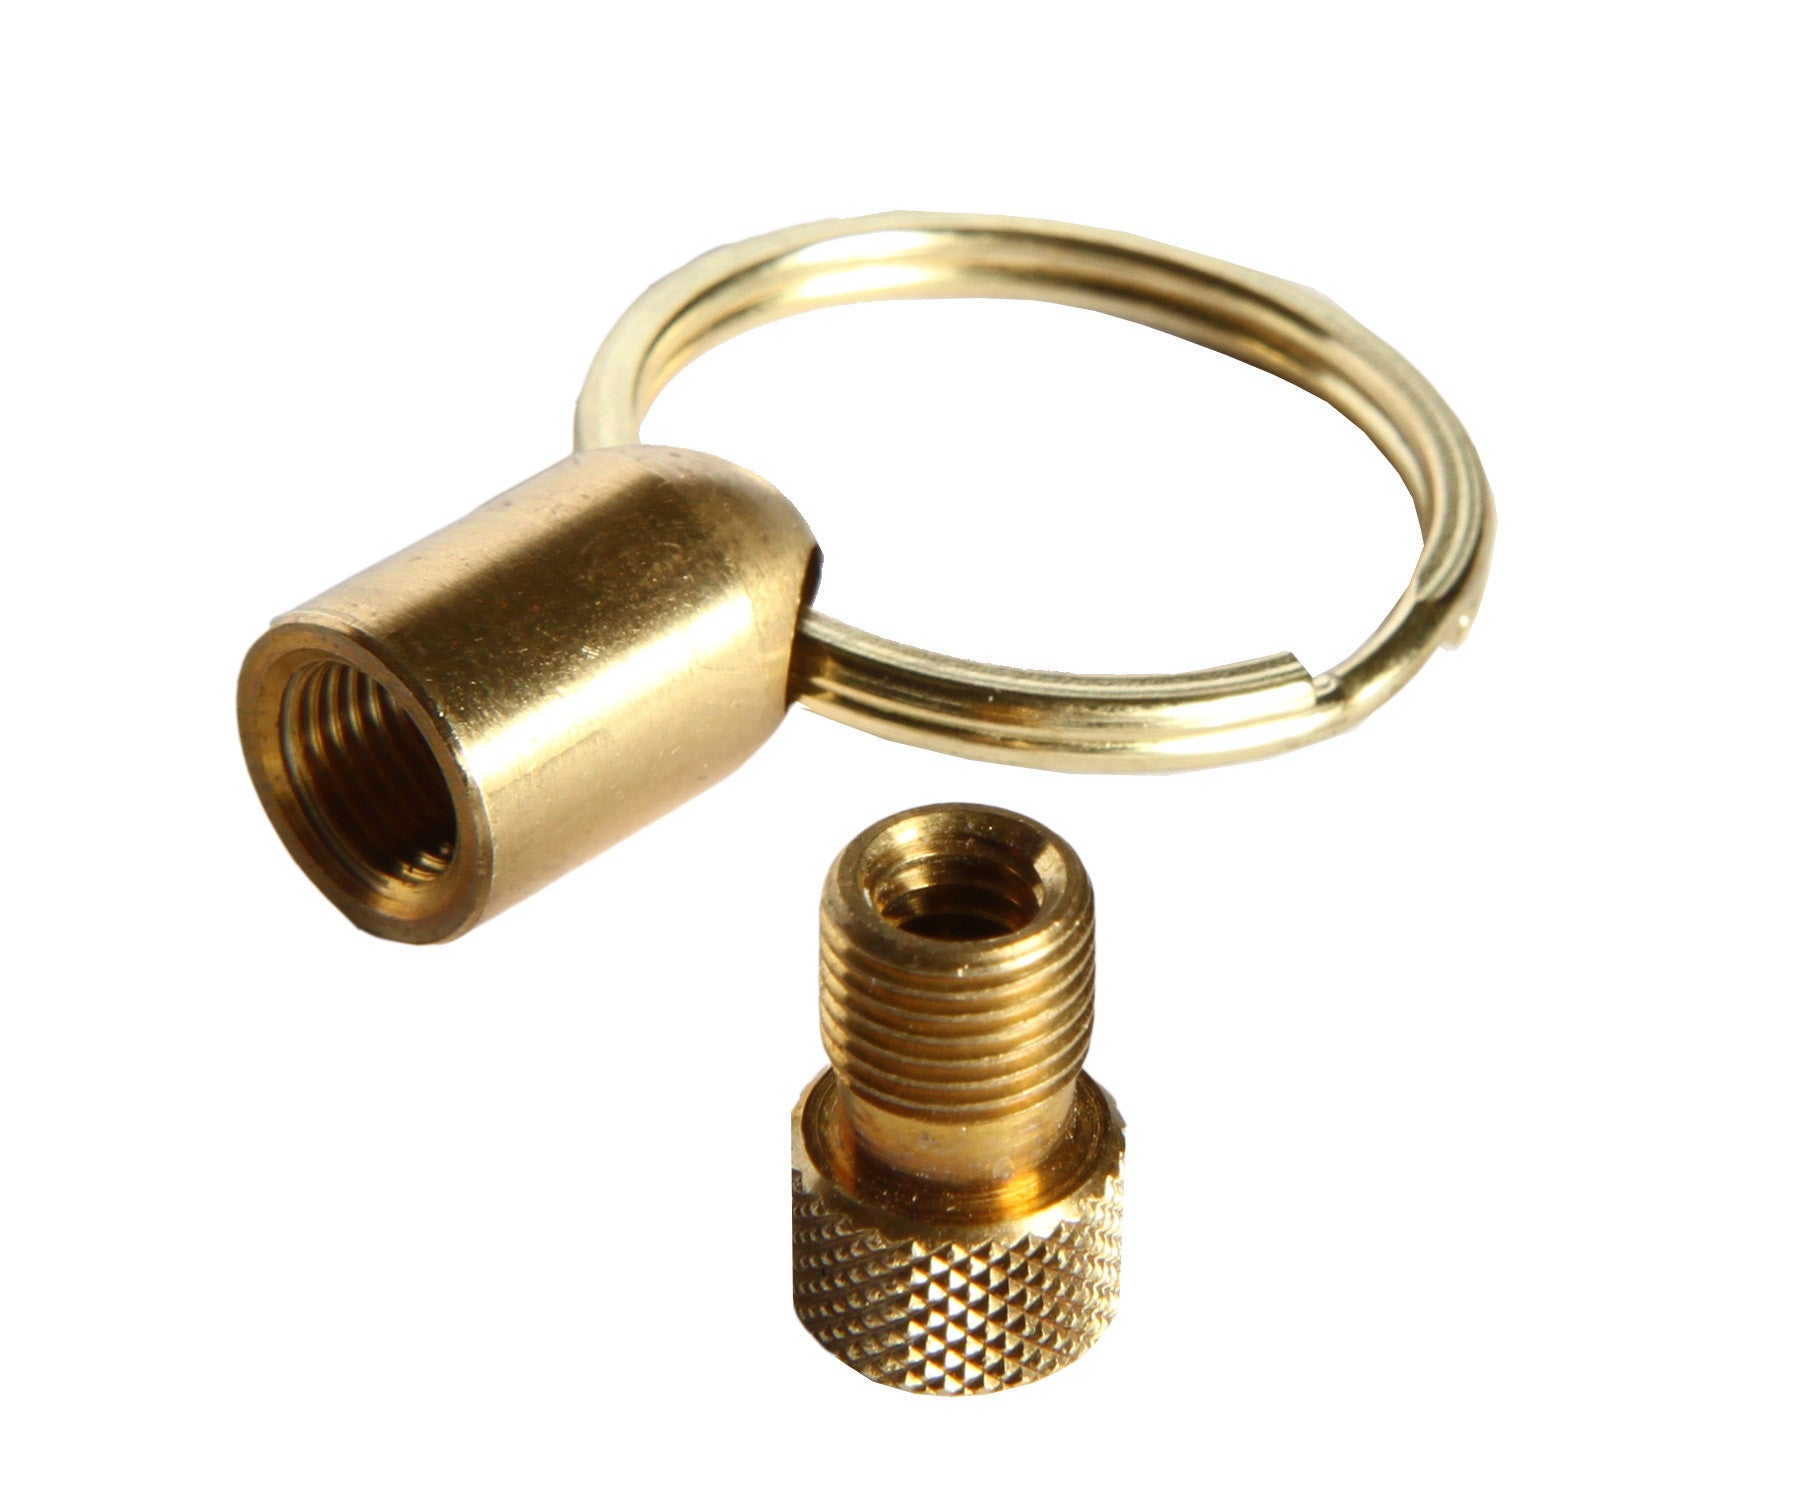 presta valve key